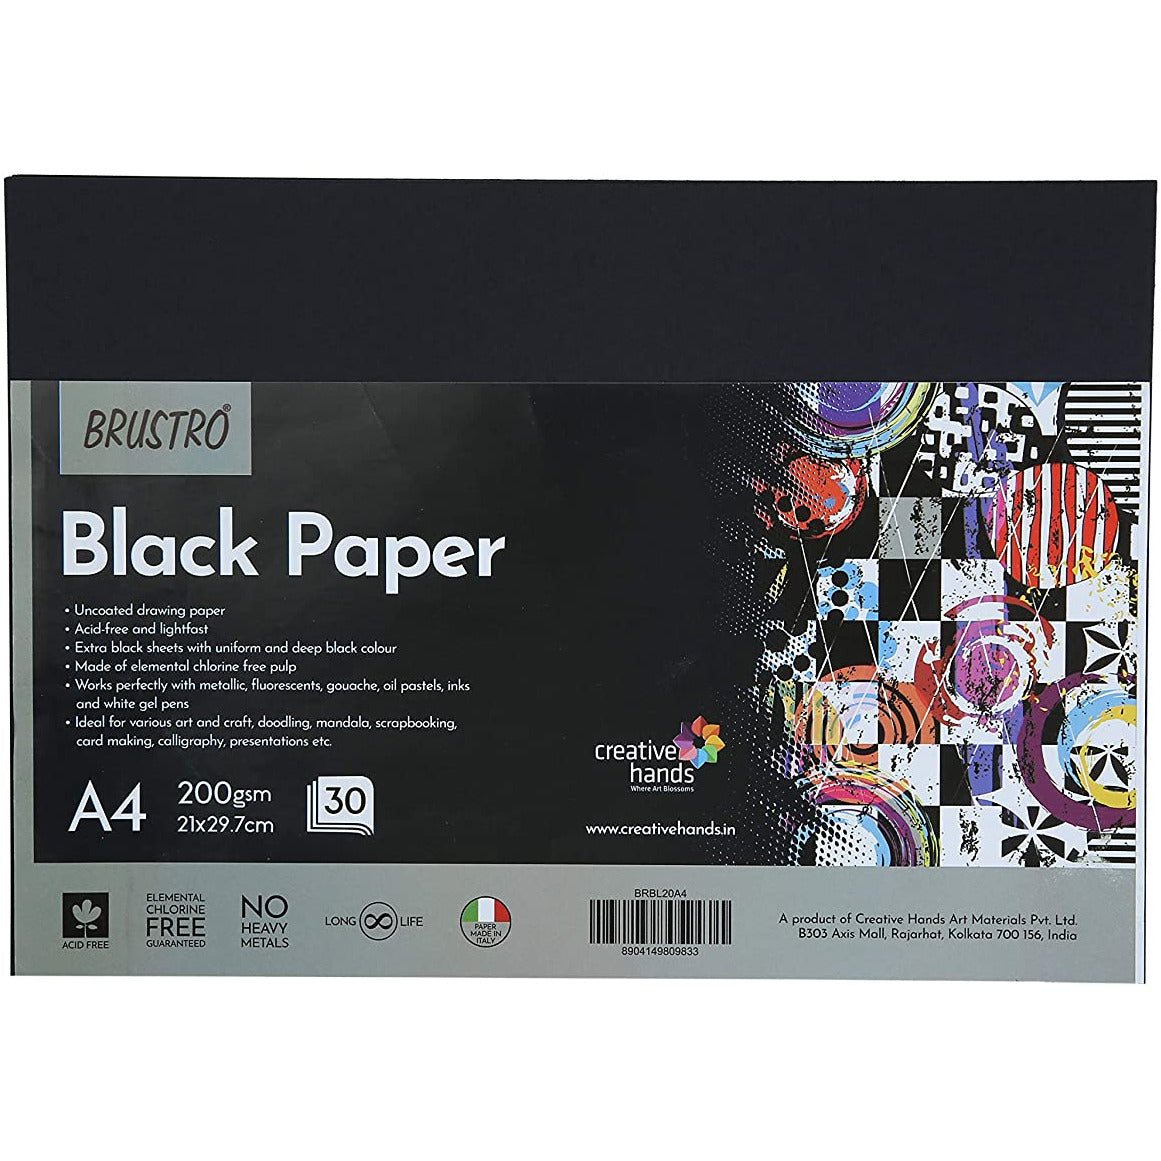 BRUSTRO BLACK PAPER 200GSM A4